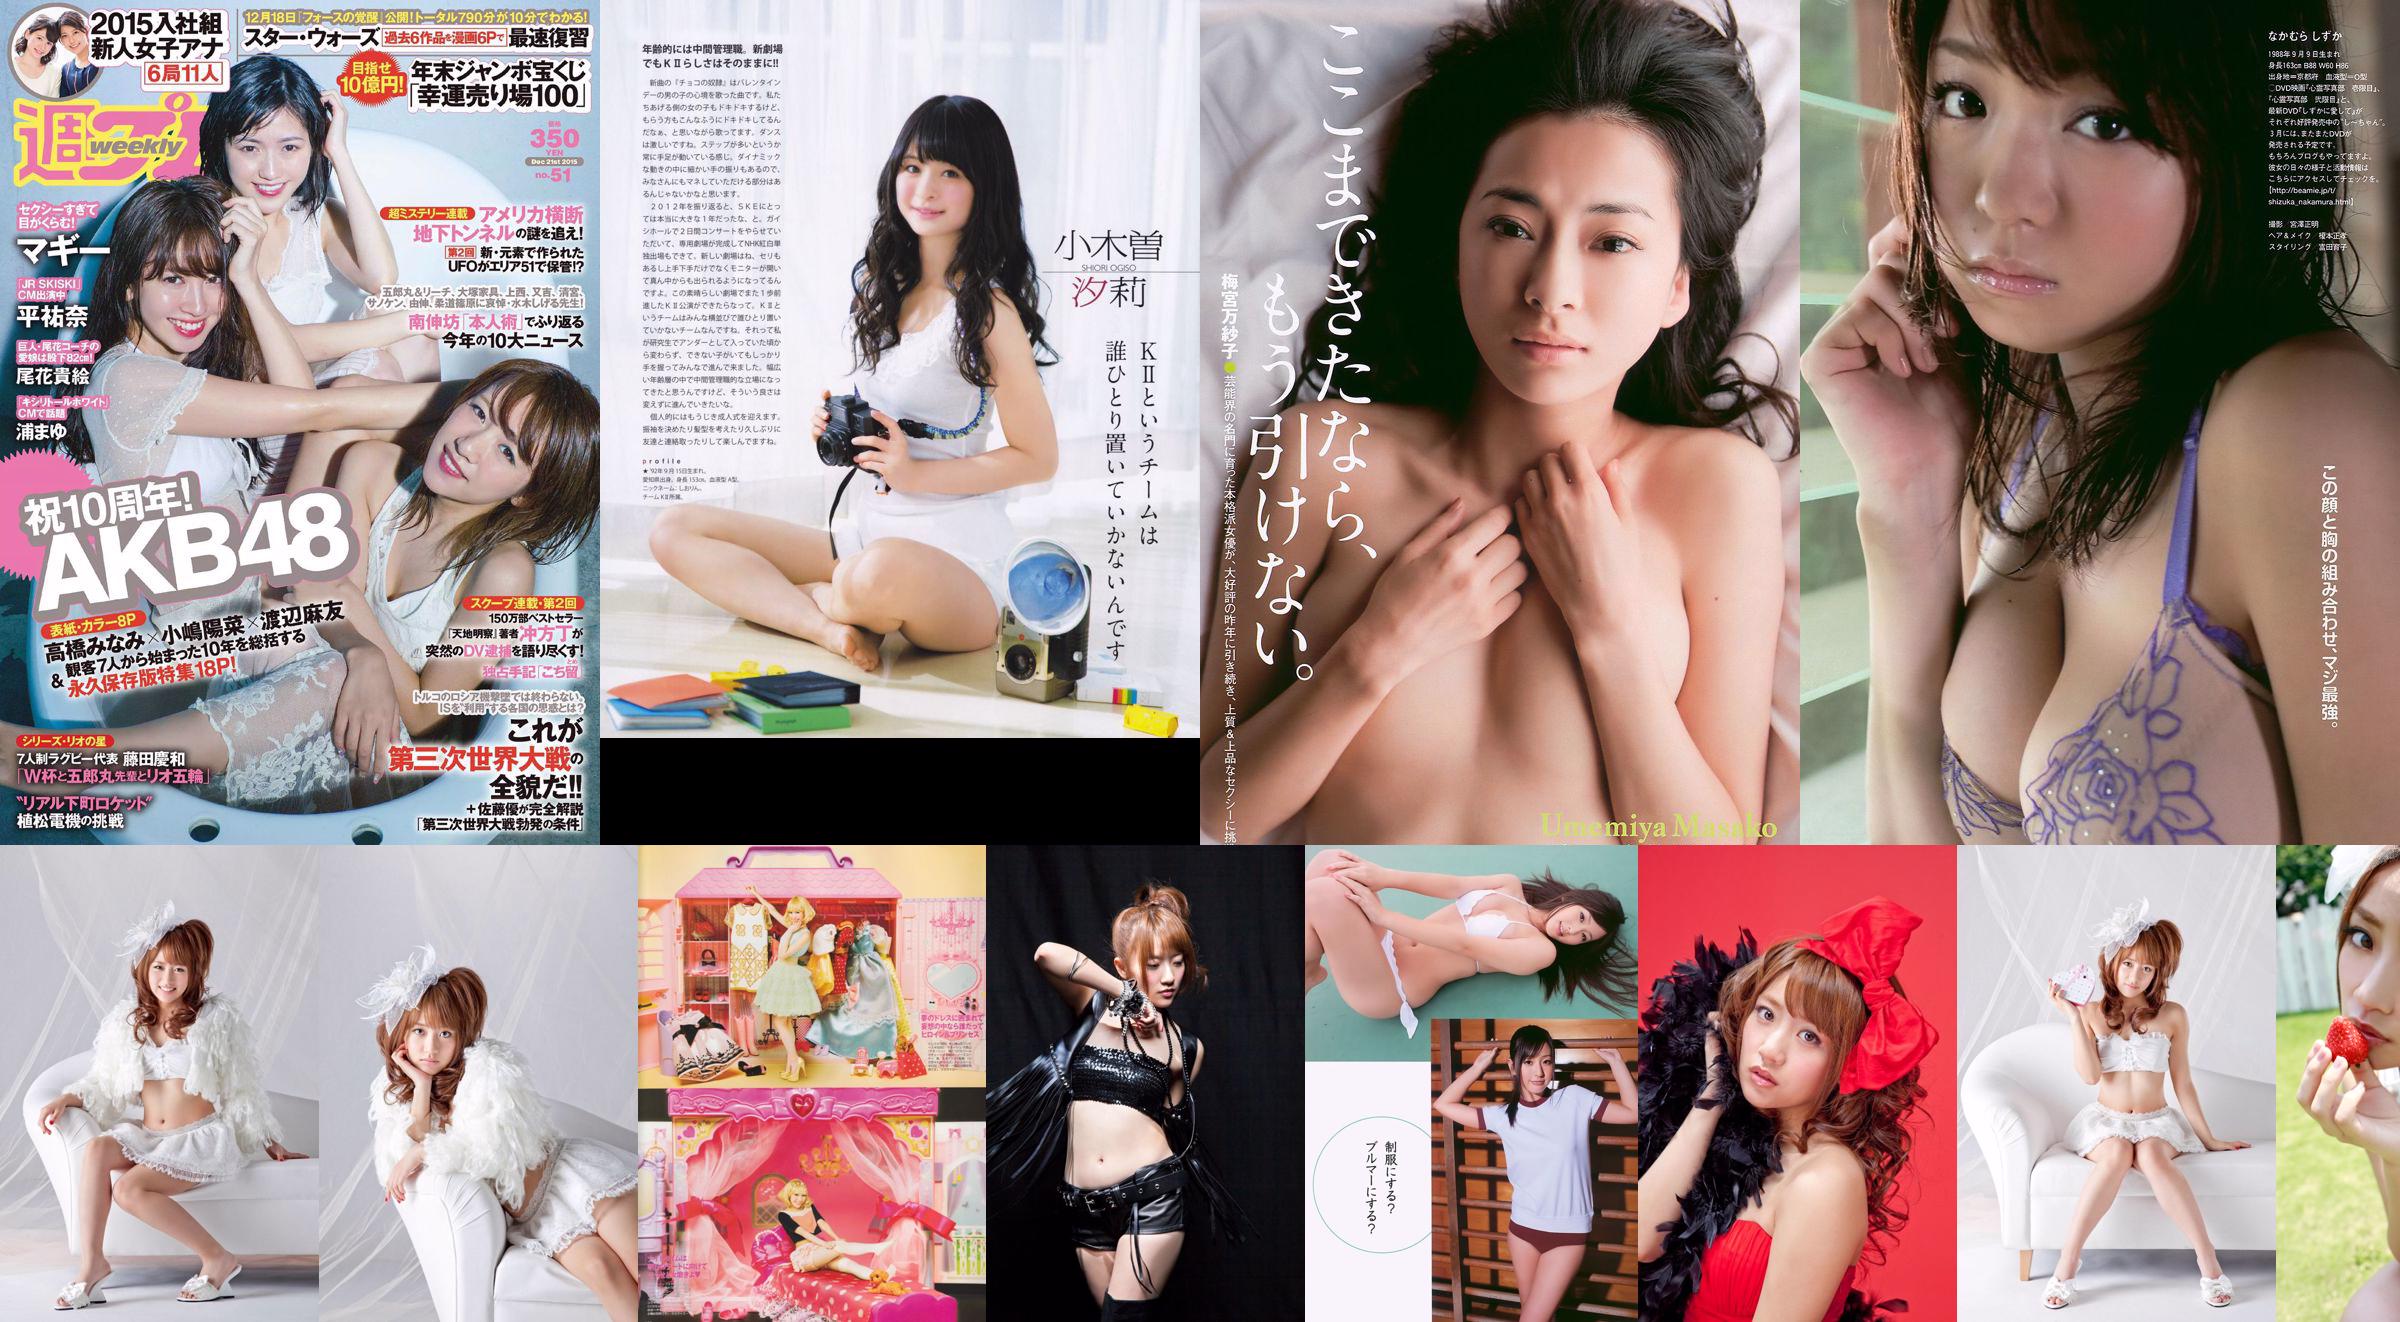 Minami Takahashi Haruna Kojima Mayu Watanabe Maggie Takae Obana Yuna Taira Mayu Ura Mitadera En [Playboy semanal] 2015 No.51 Foto No.2f3829 Página 1